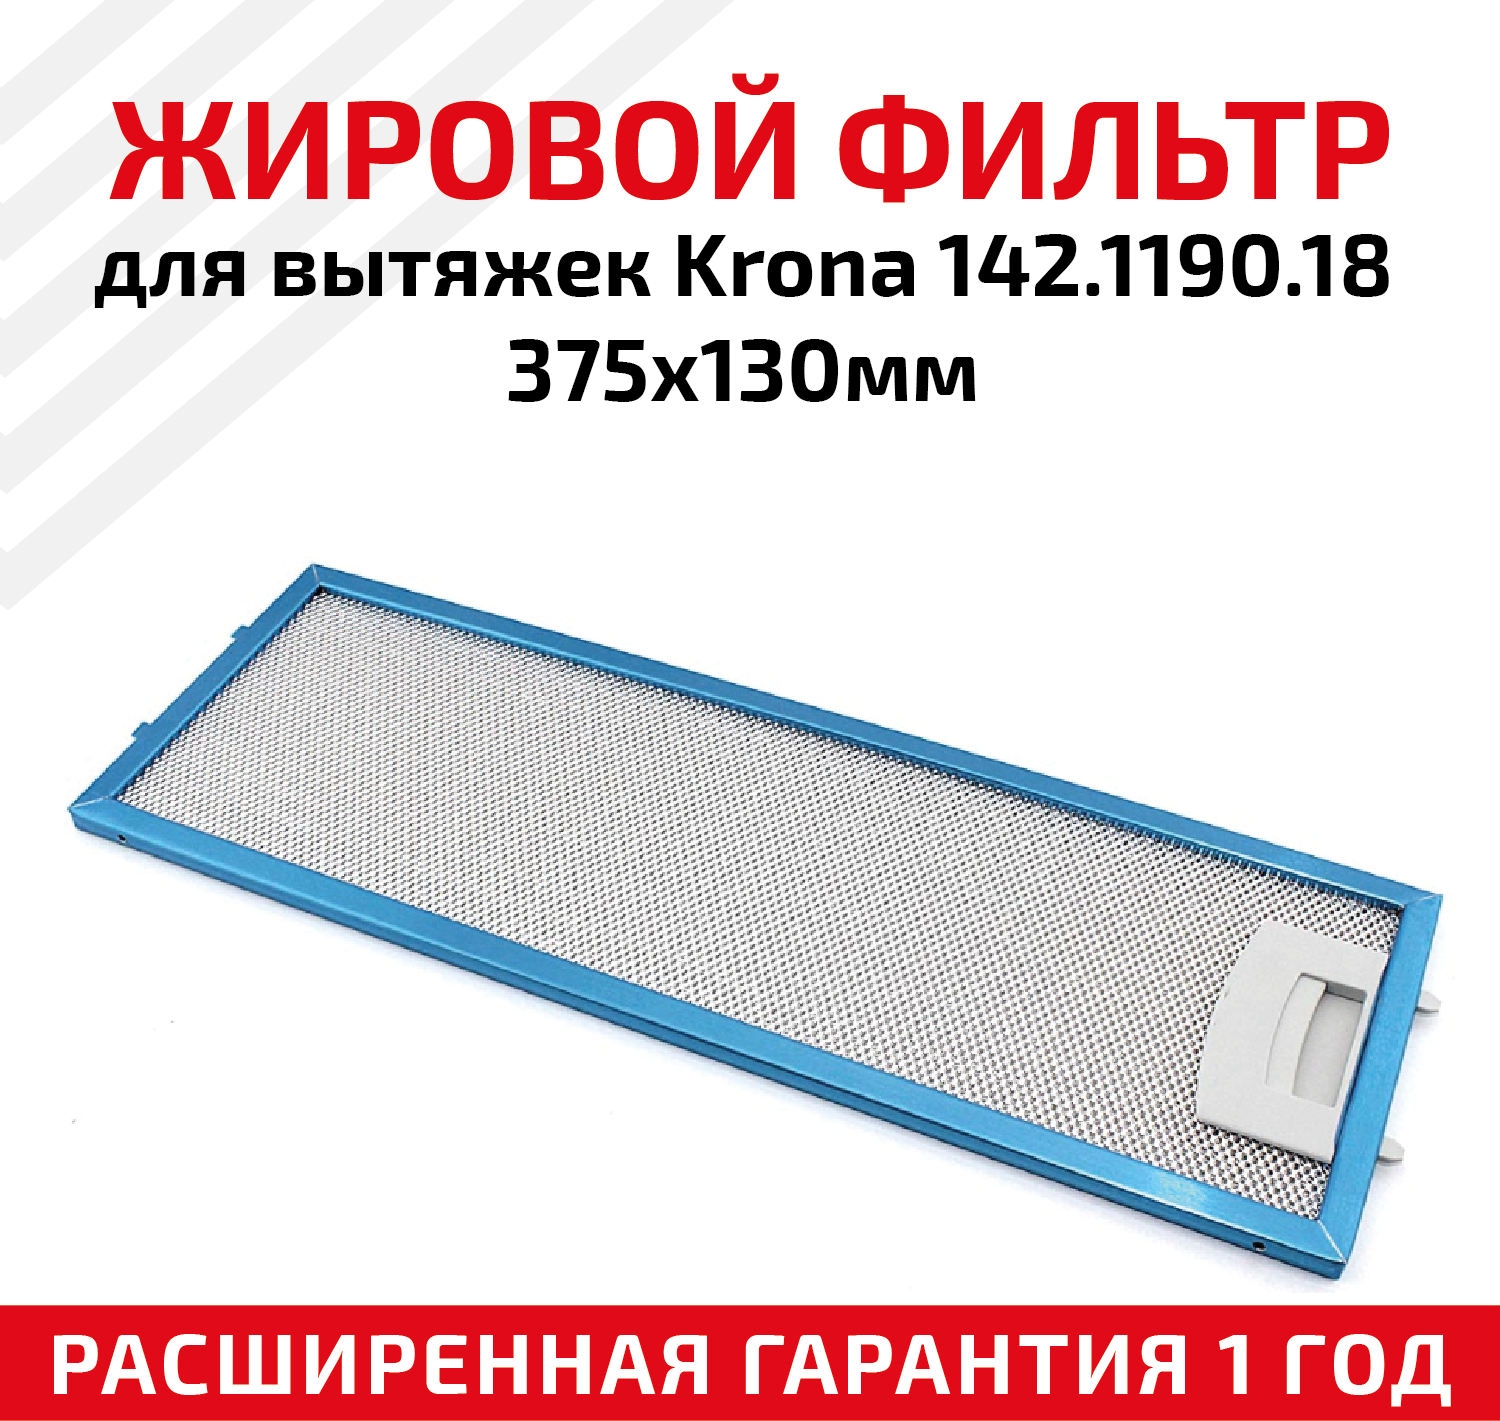 Жировой фильтр (кассета) алюминиевый (металлический) рамочный для вытяжек Krona 142.1190.18, многоразовый, 375х130мм